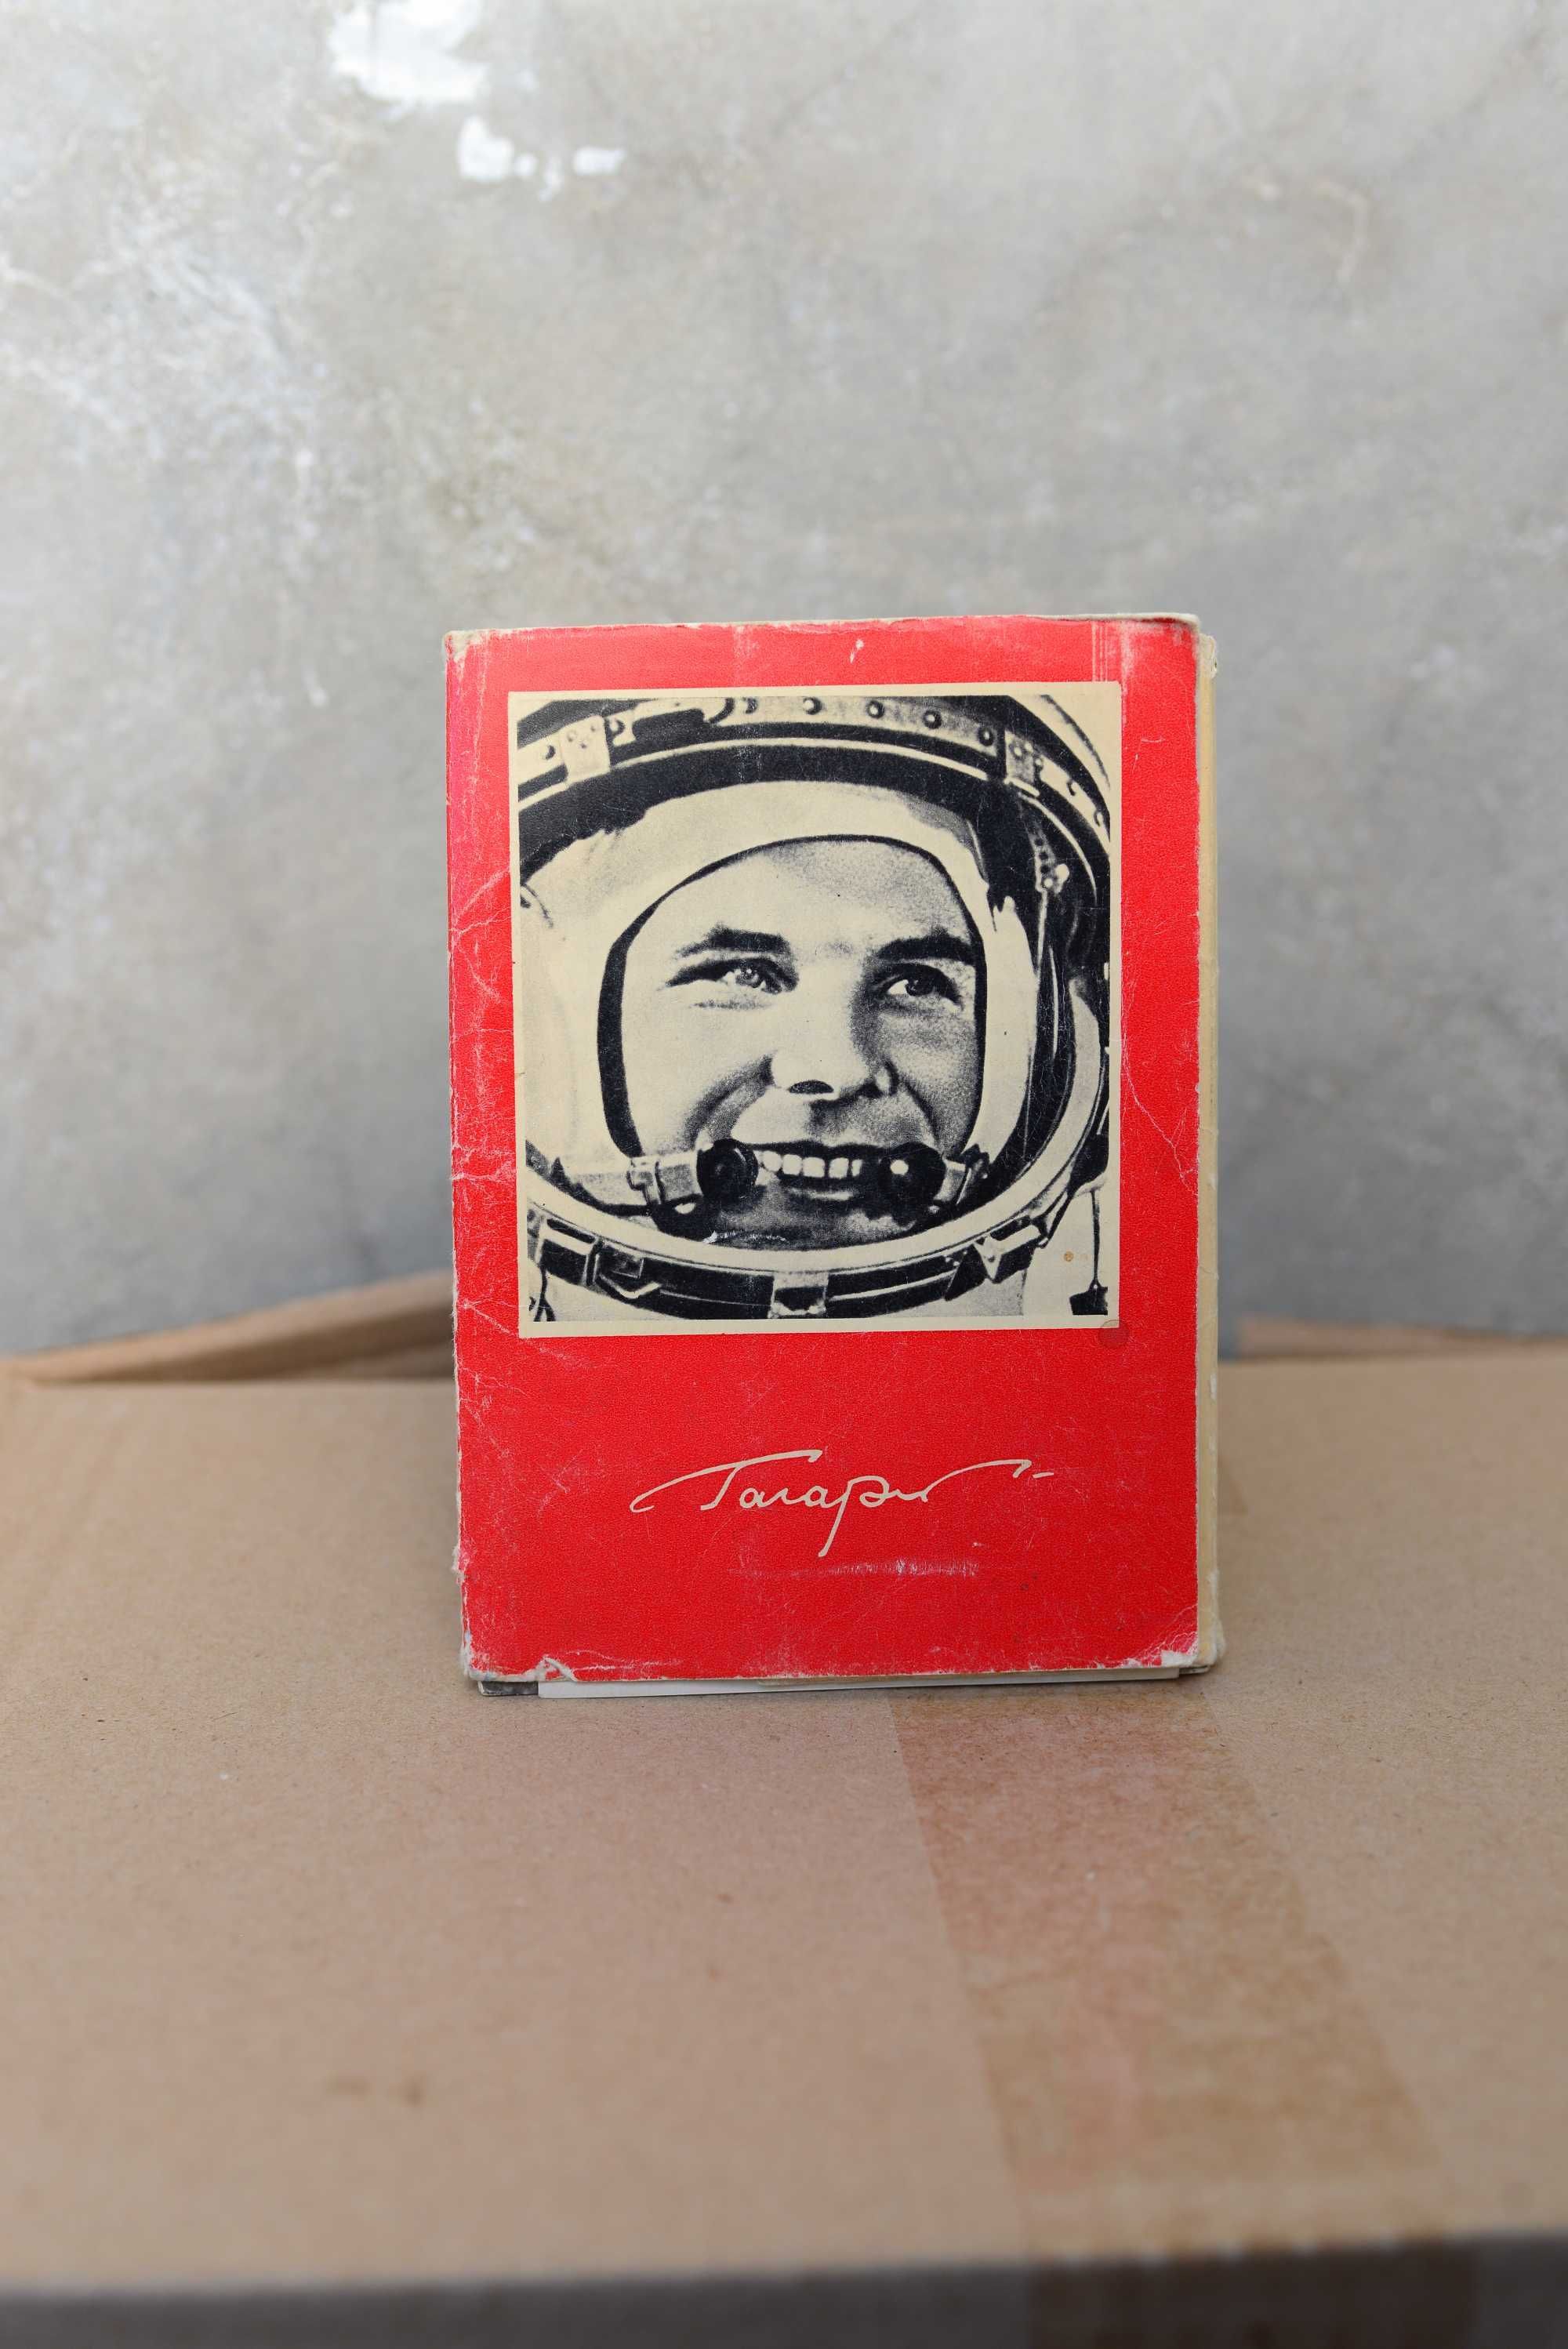 Набори поштових і туристичних листівок СРСР